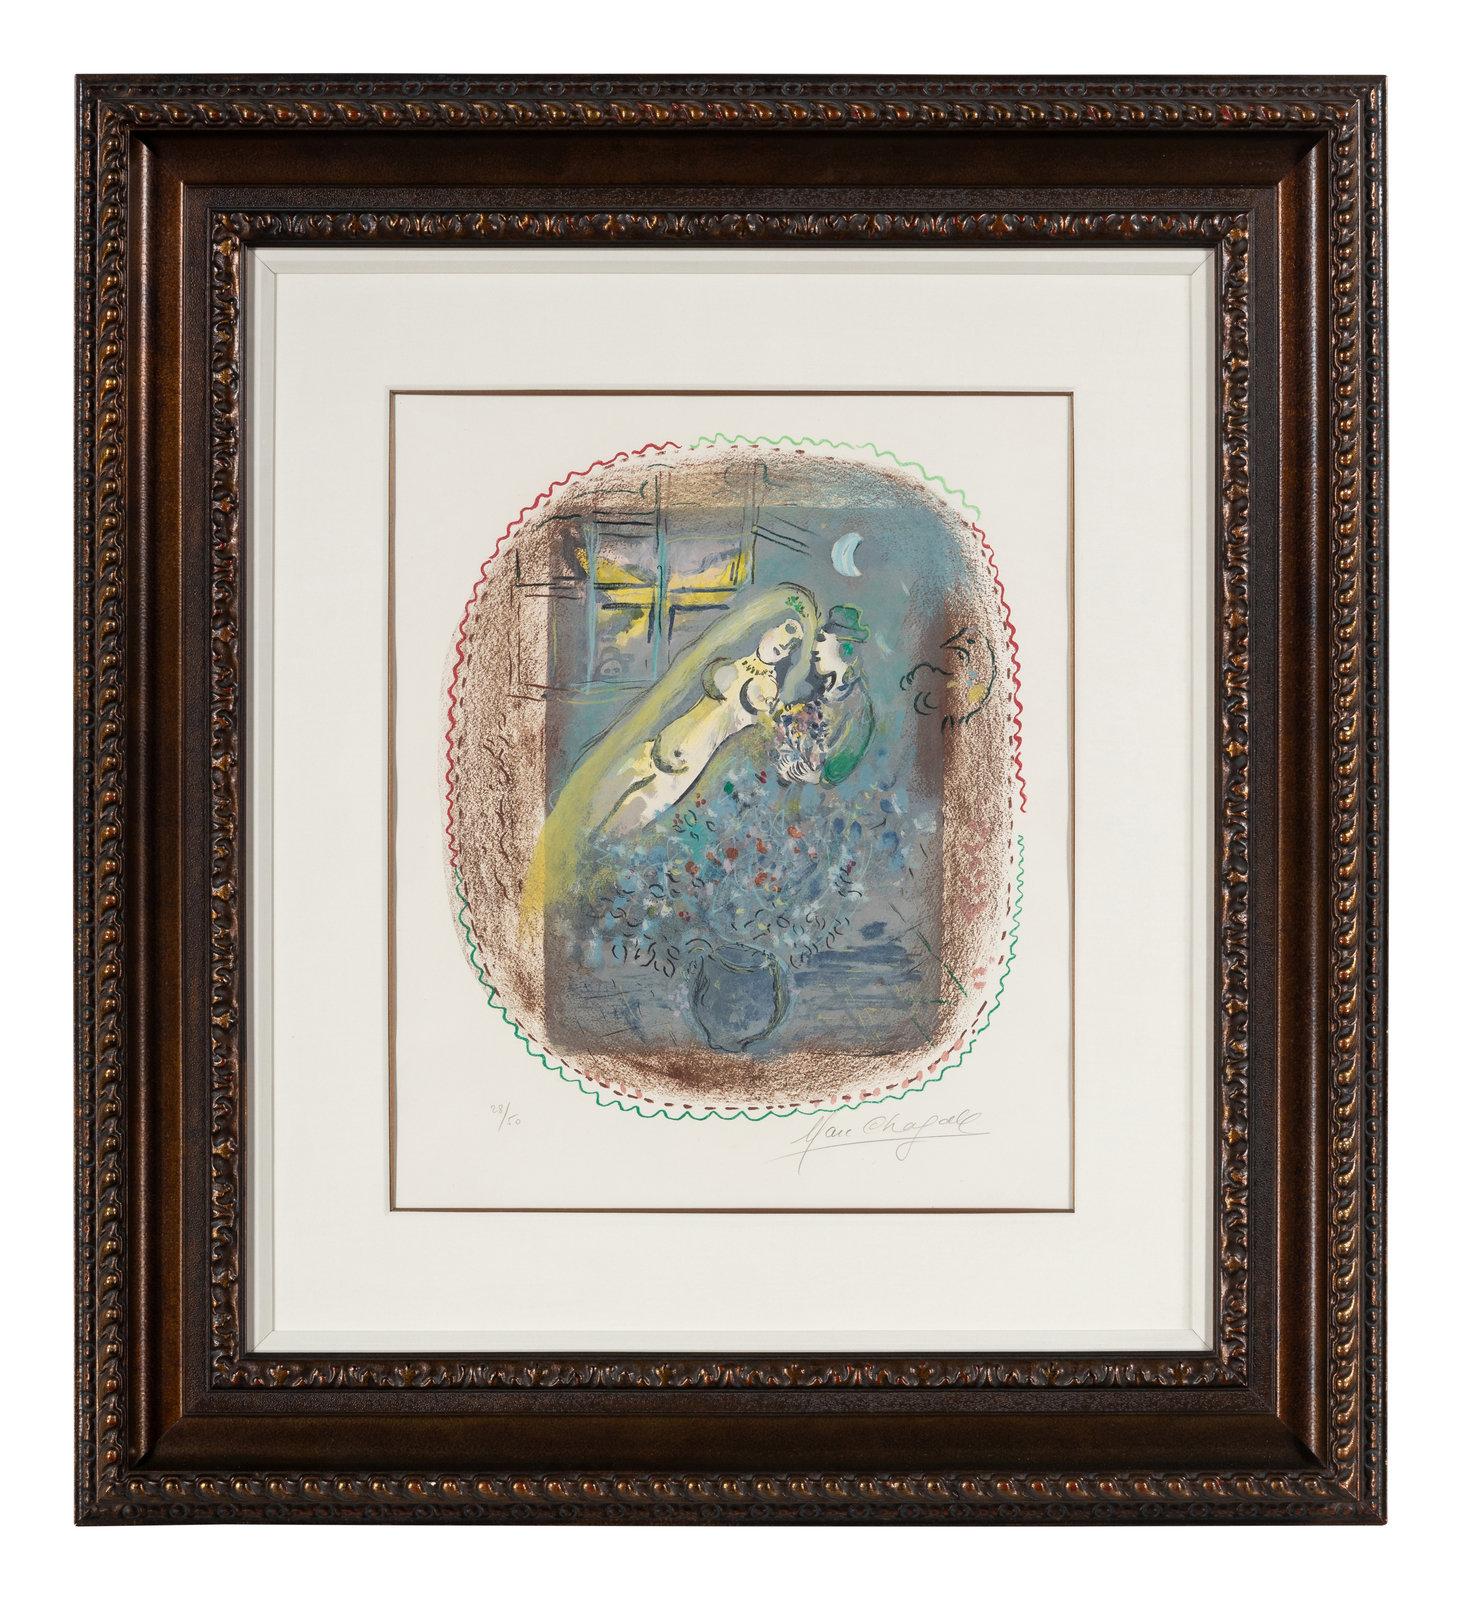 Marc Chagall  (Französisch/Russisch, 1887-1985)

"Dédicace" 

1968
Farblithographie

signiert und nummeriert 28/50 in Bleistift
Bild: 17 7/8 x 15 1/4 Zoll.
Gerahmt: 38 x 34 1/4 x 2 1/4 Zoll.
Blatt: 24 3/8 x 18 5/8 Zoll.
Literatur:
Mourlot